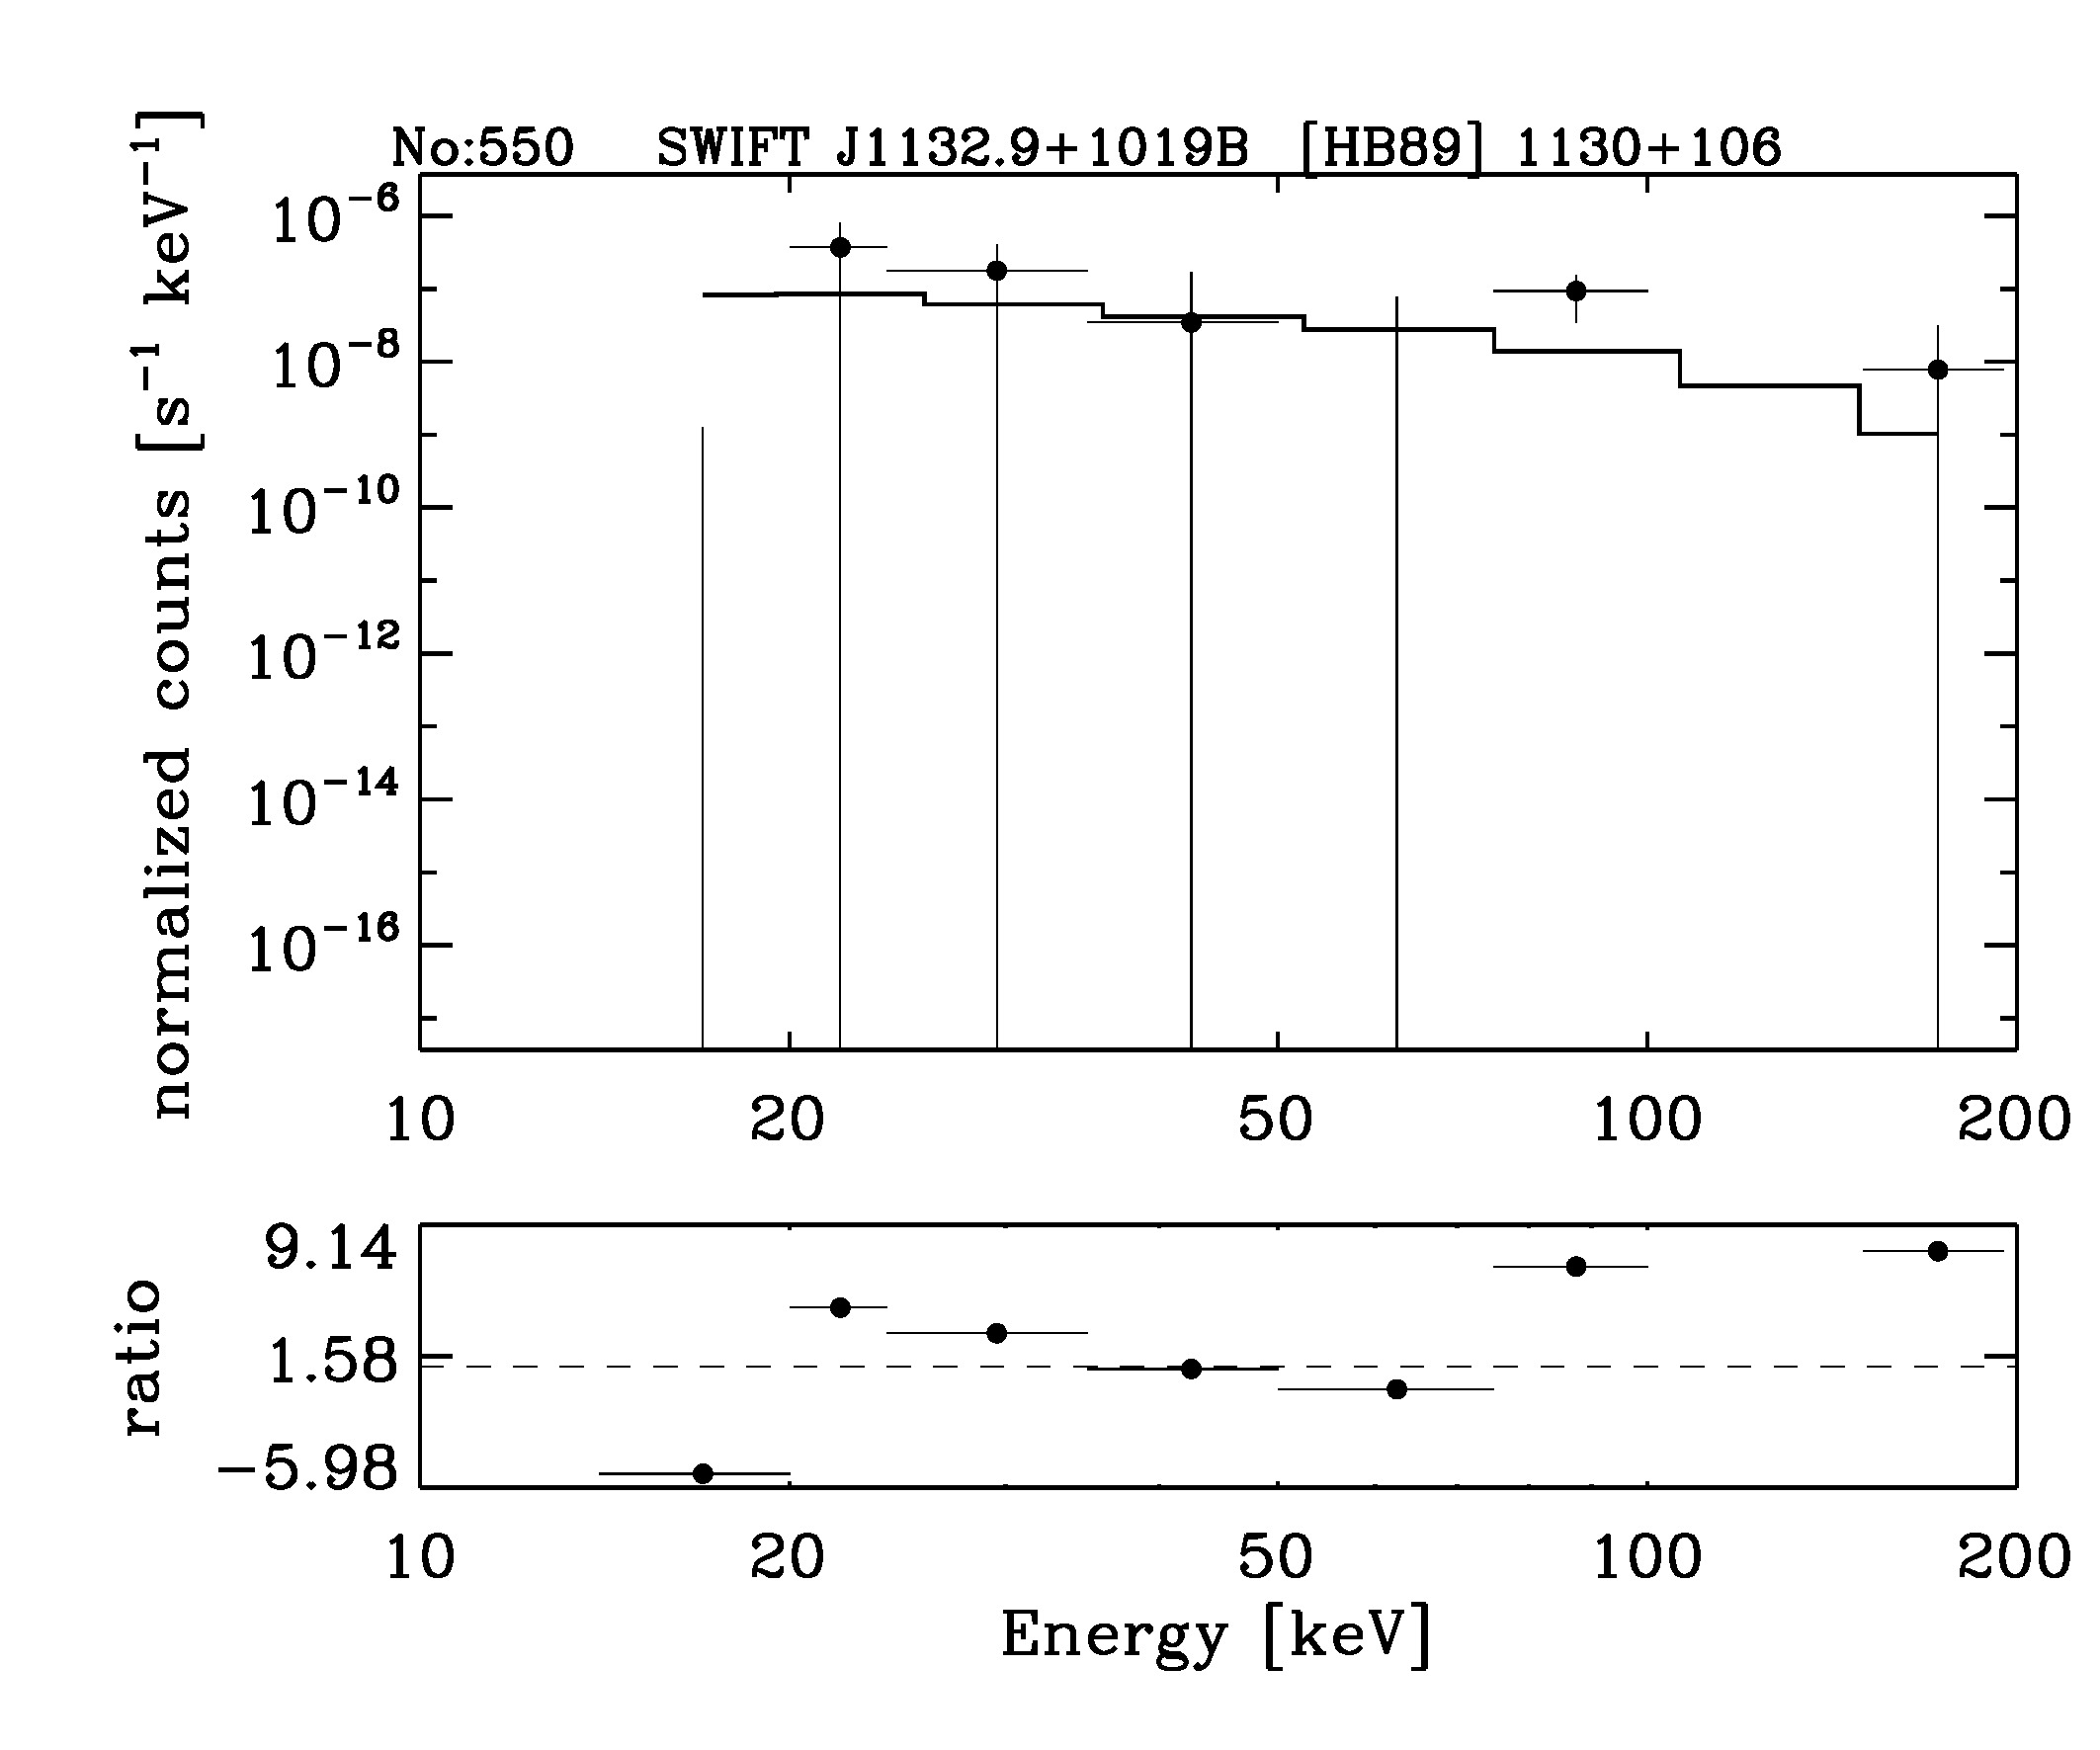 BAT Spectrum for SWIFT J1132.9+1019B